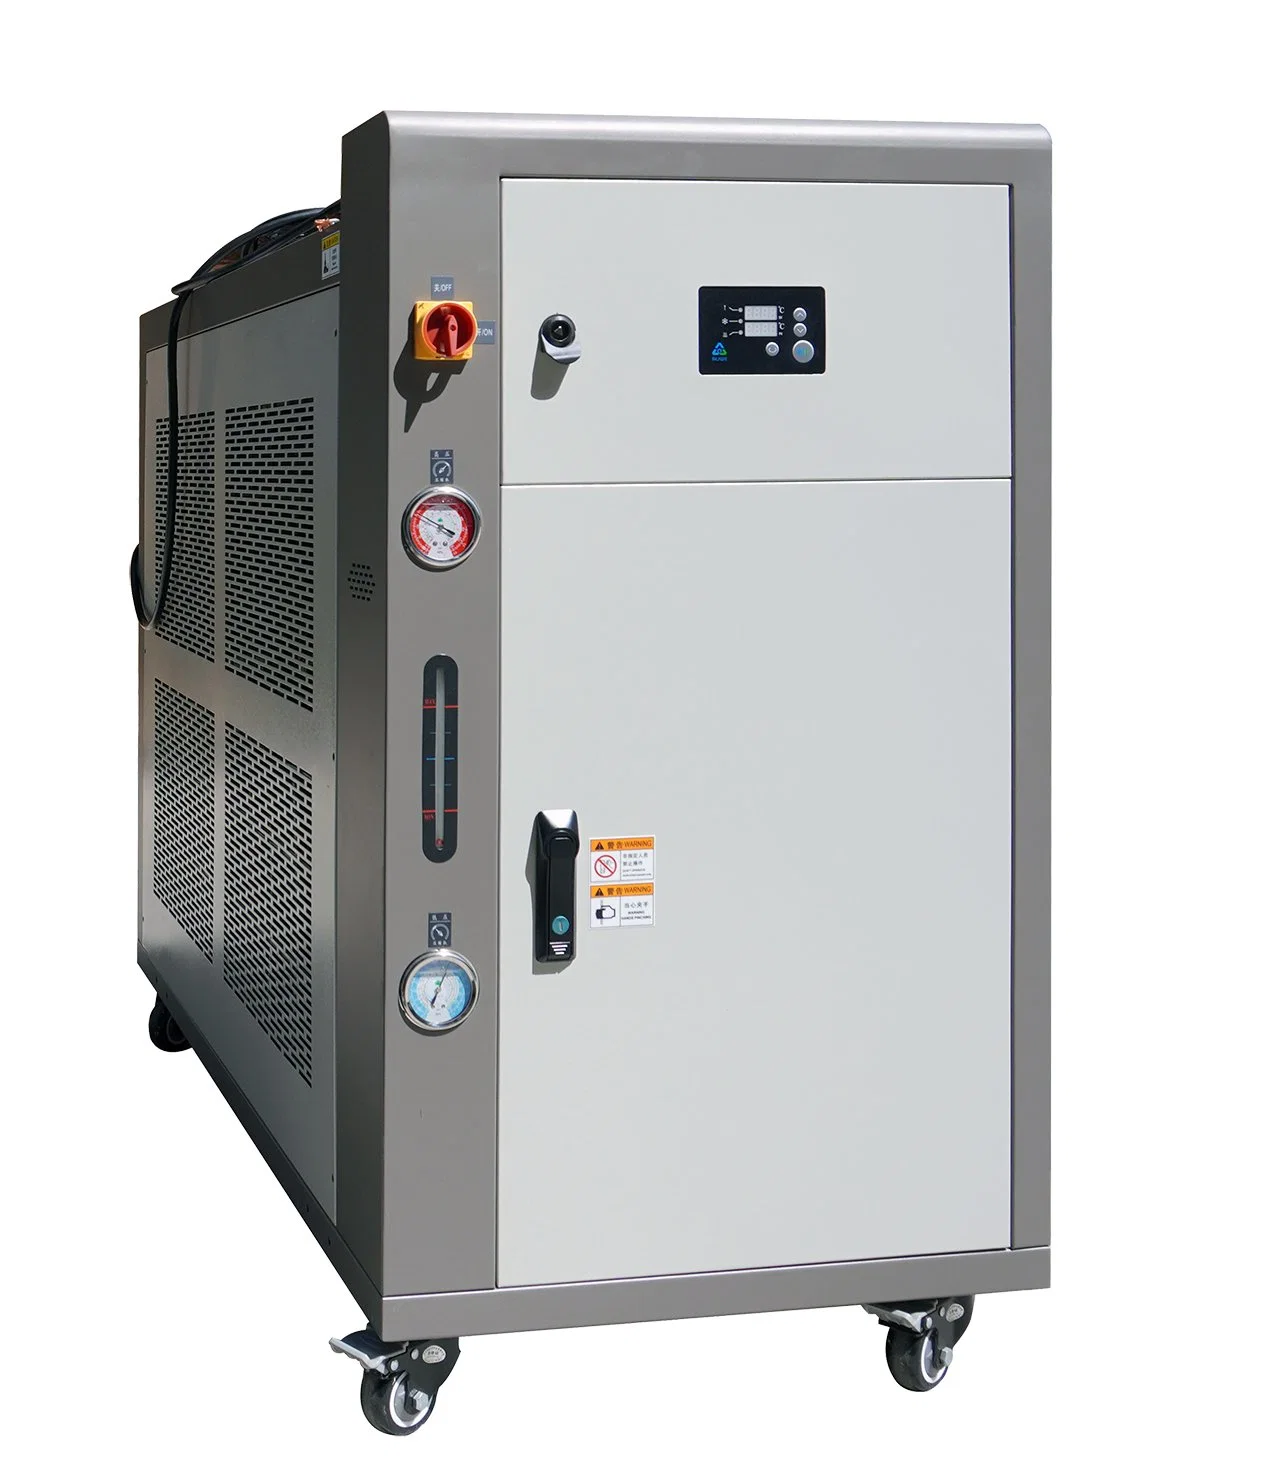 Industrielle Gewerbliche Wasser / Luft Gekühlte Kühler / Conditioner Kühlung Systeme